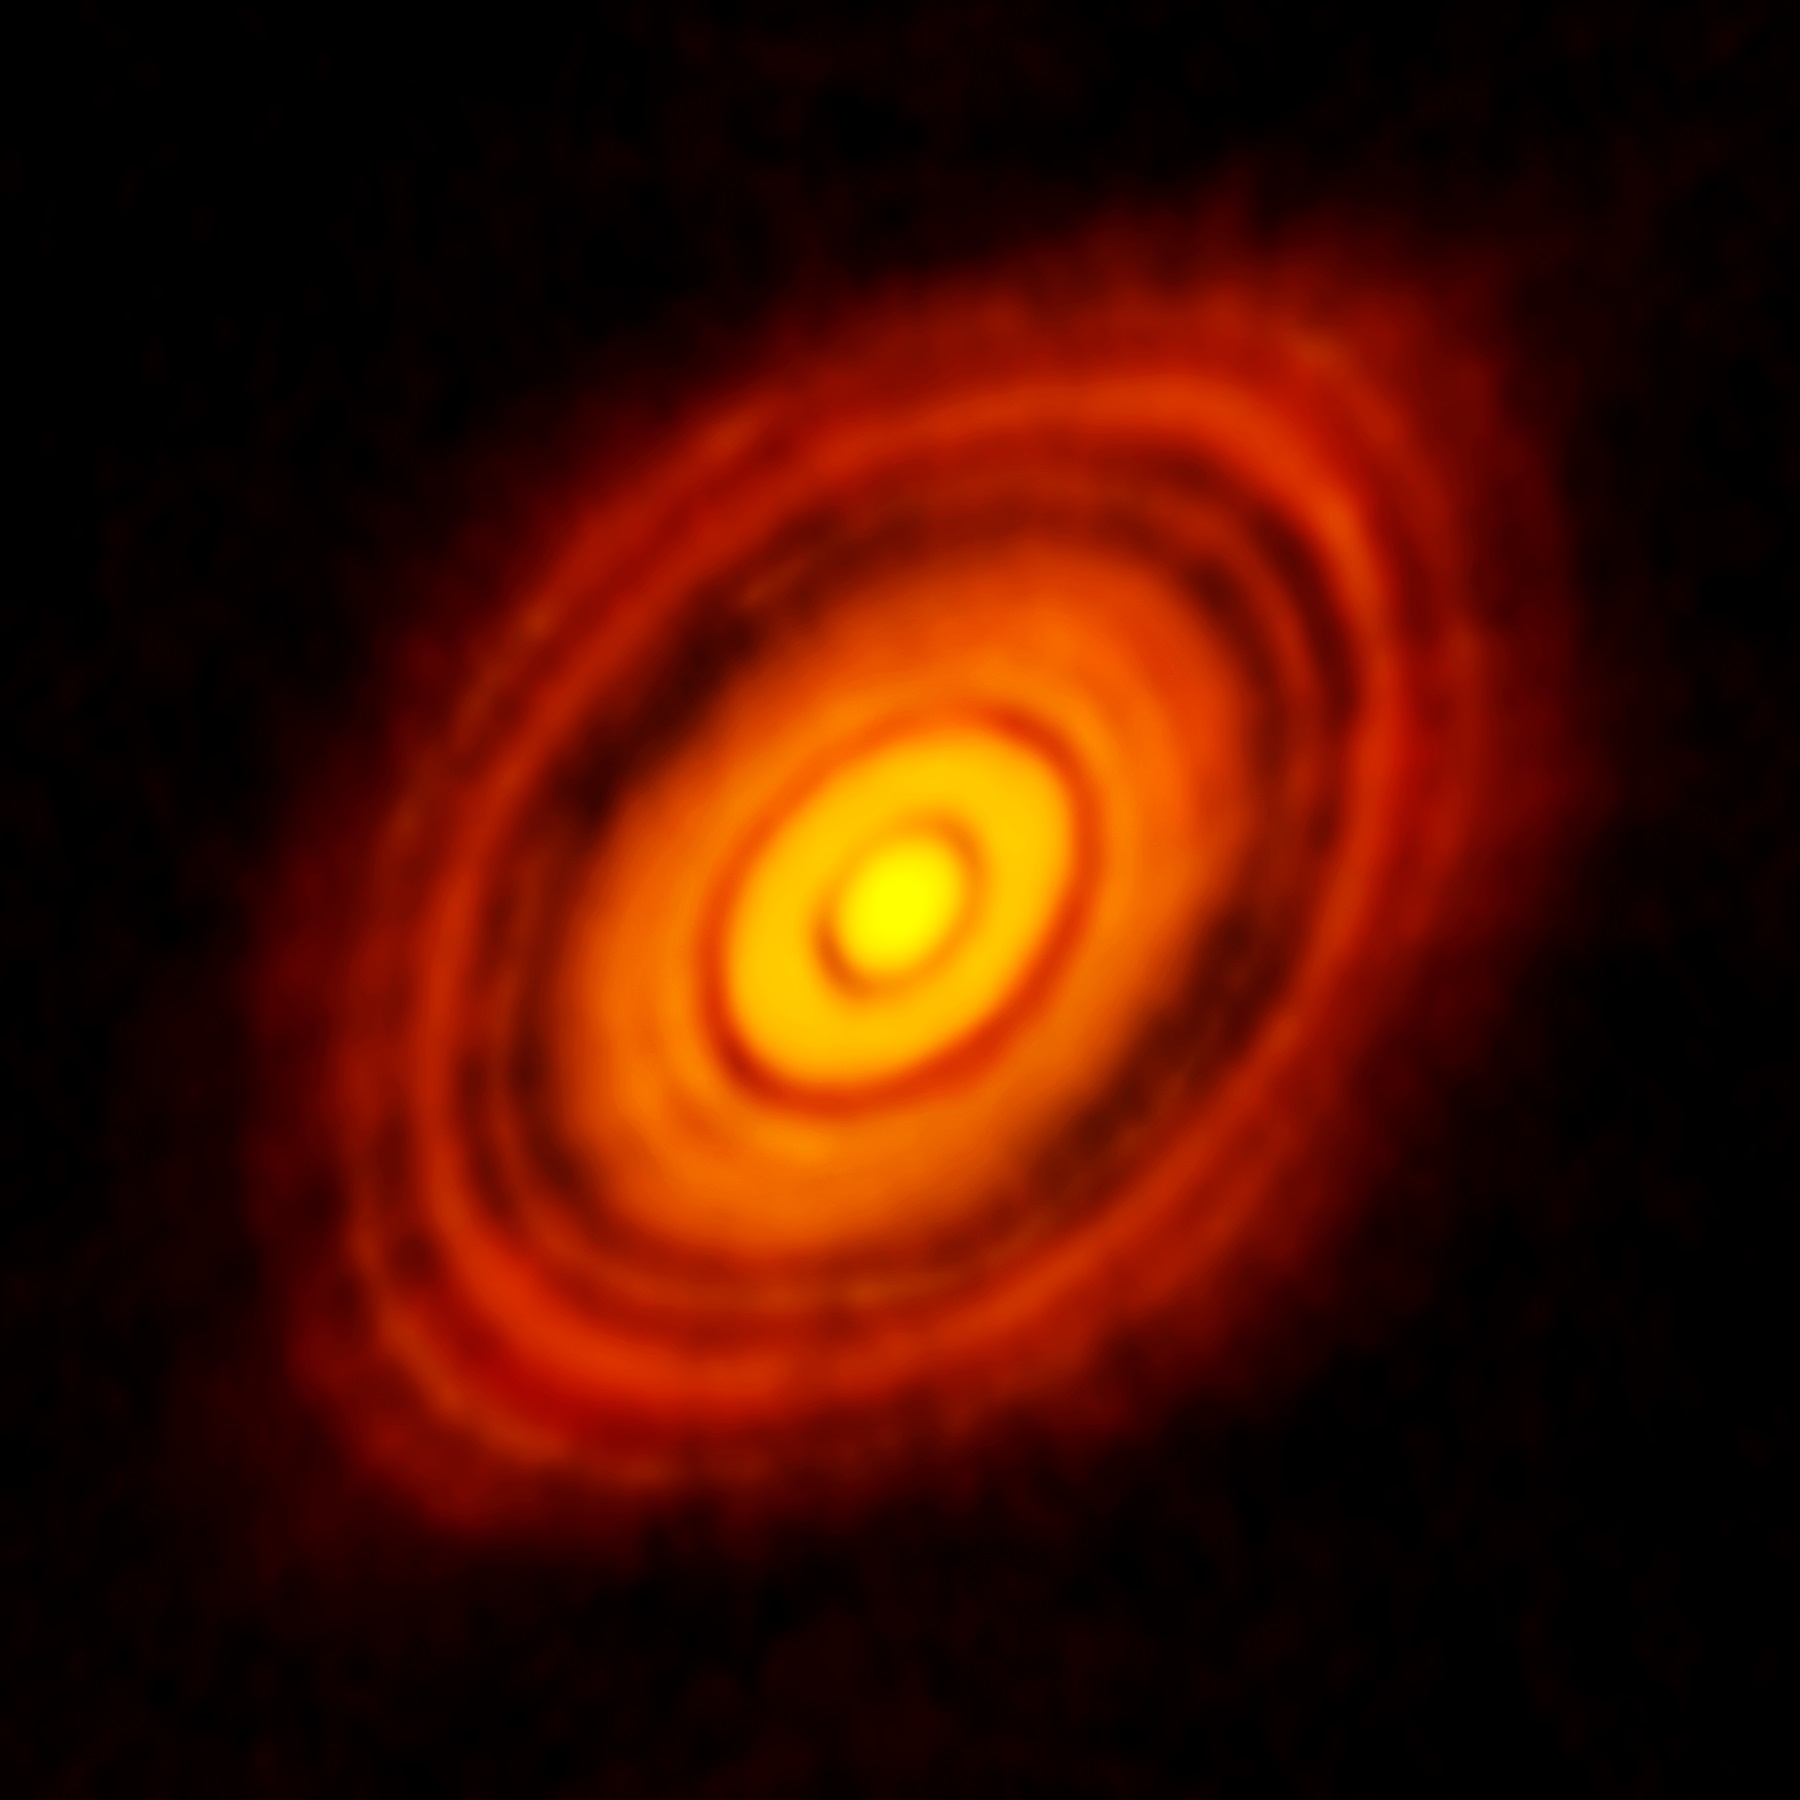 HL Tauri се намира на около 450 светлинни години от Земята